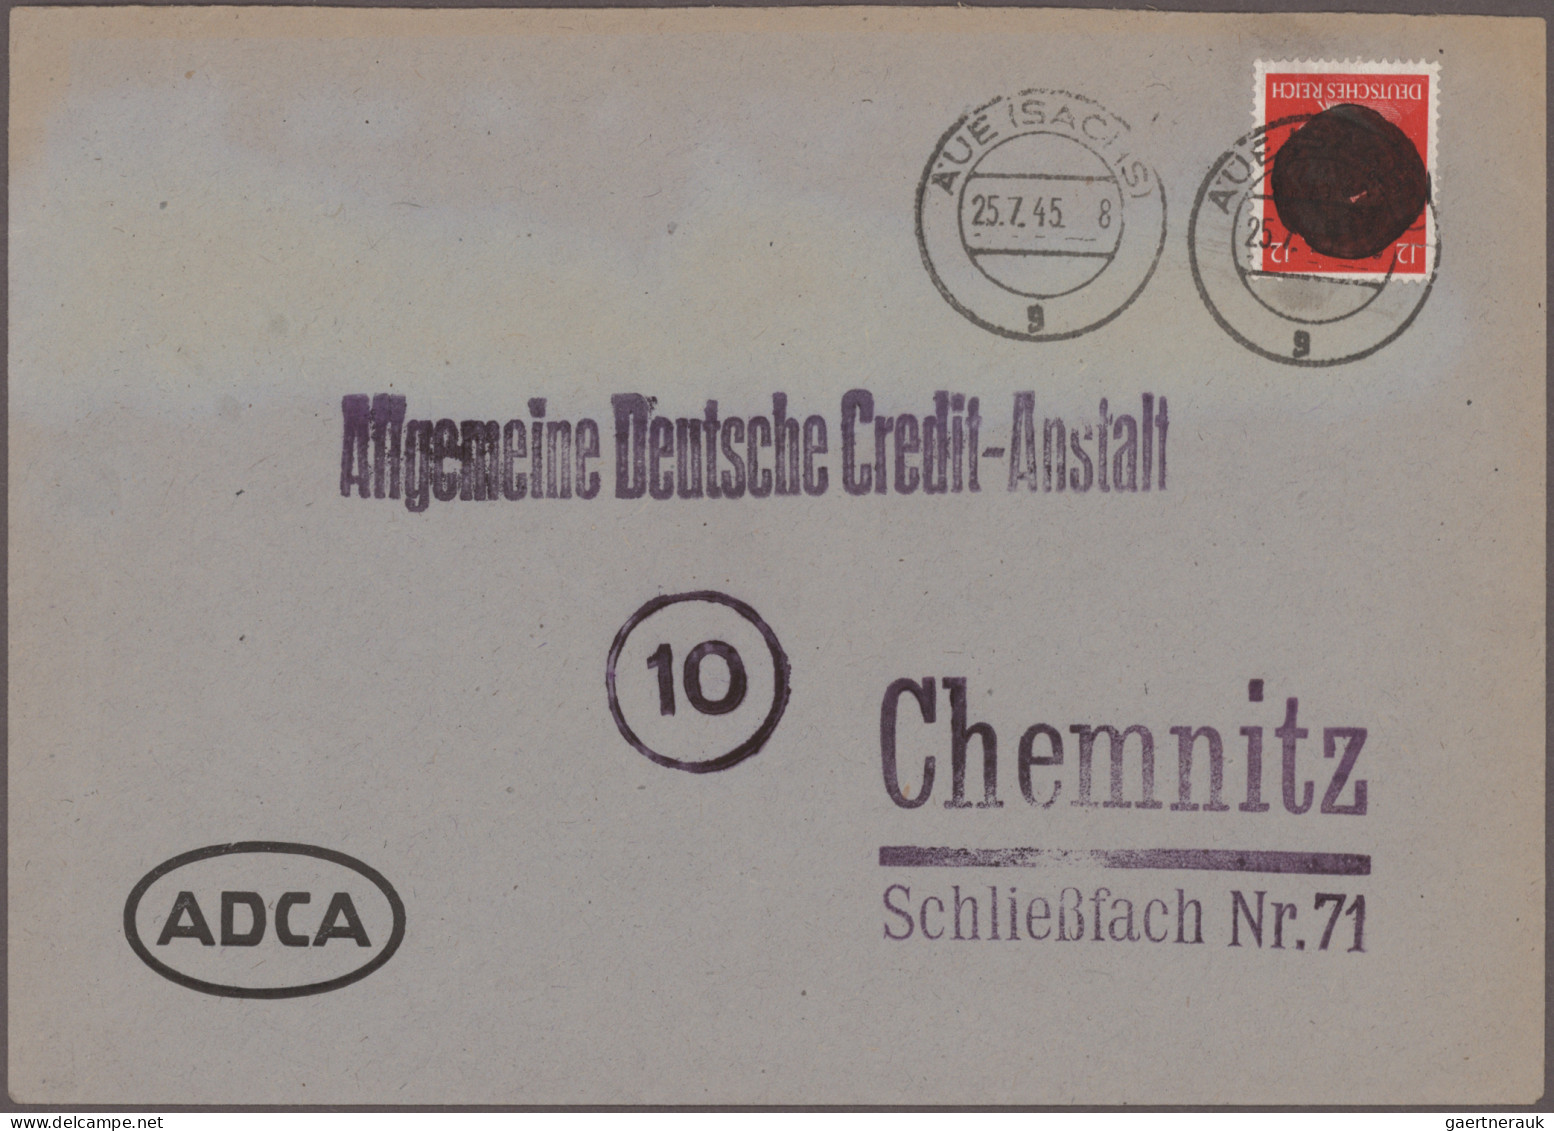 Deutschland: 1872/1990 (ca.), Belegposten "Deutschland" in Alben und Schachteln